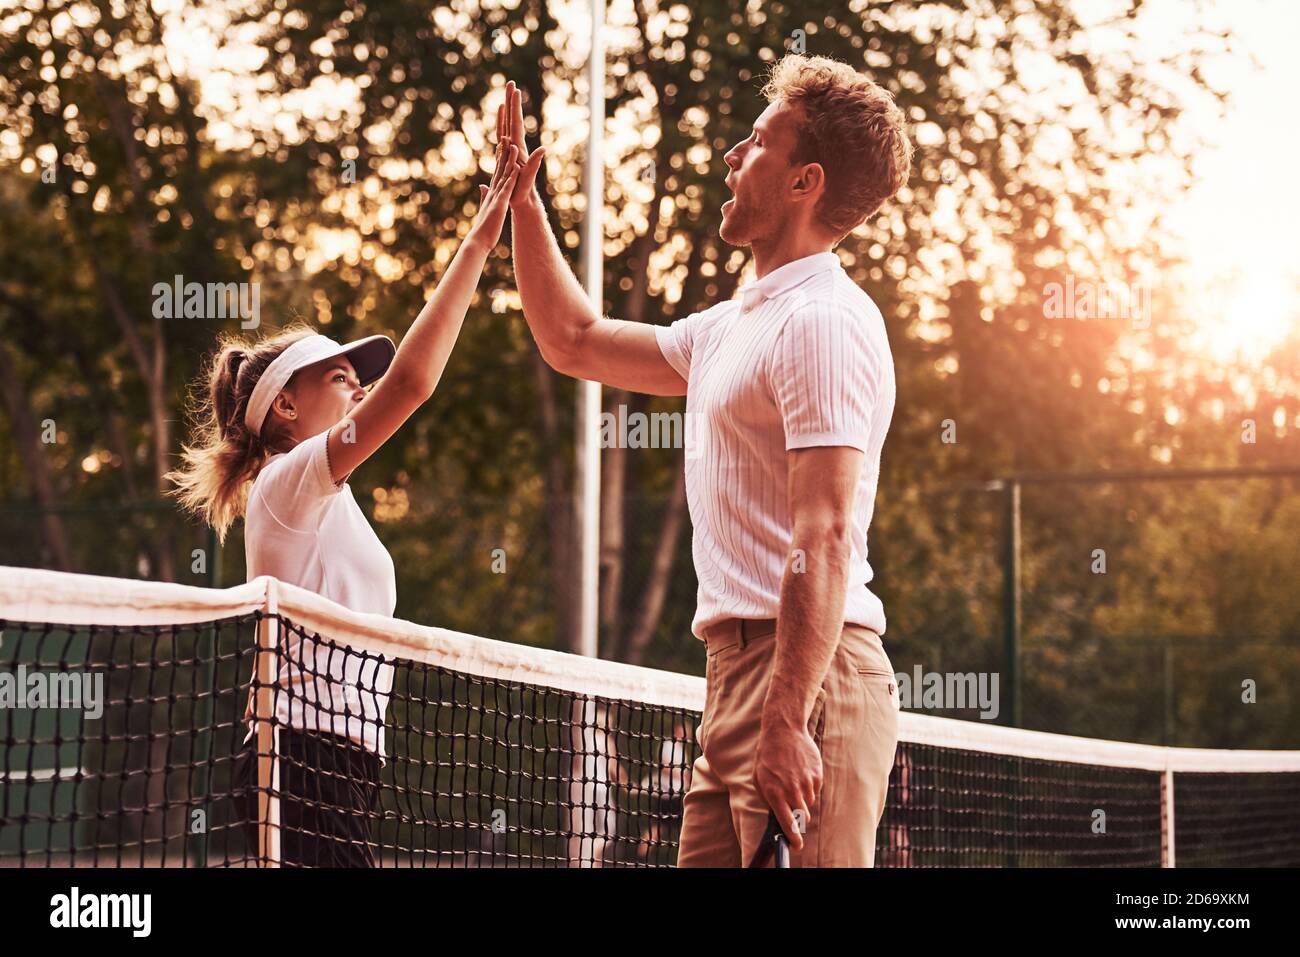 Hohe fünf geben. Zwei Personen in Sportuniform spielen gemeinsam Tennis auf dem Platz Stockfoto